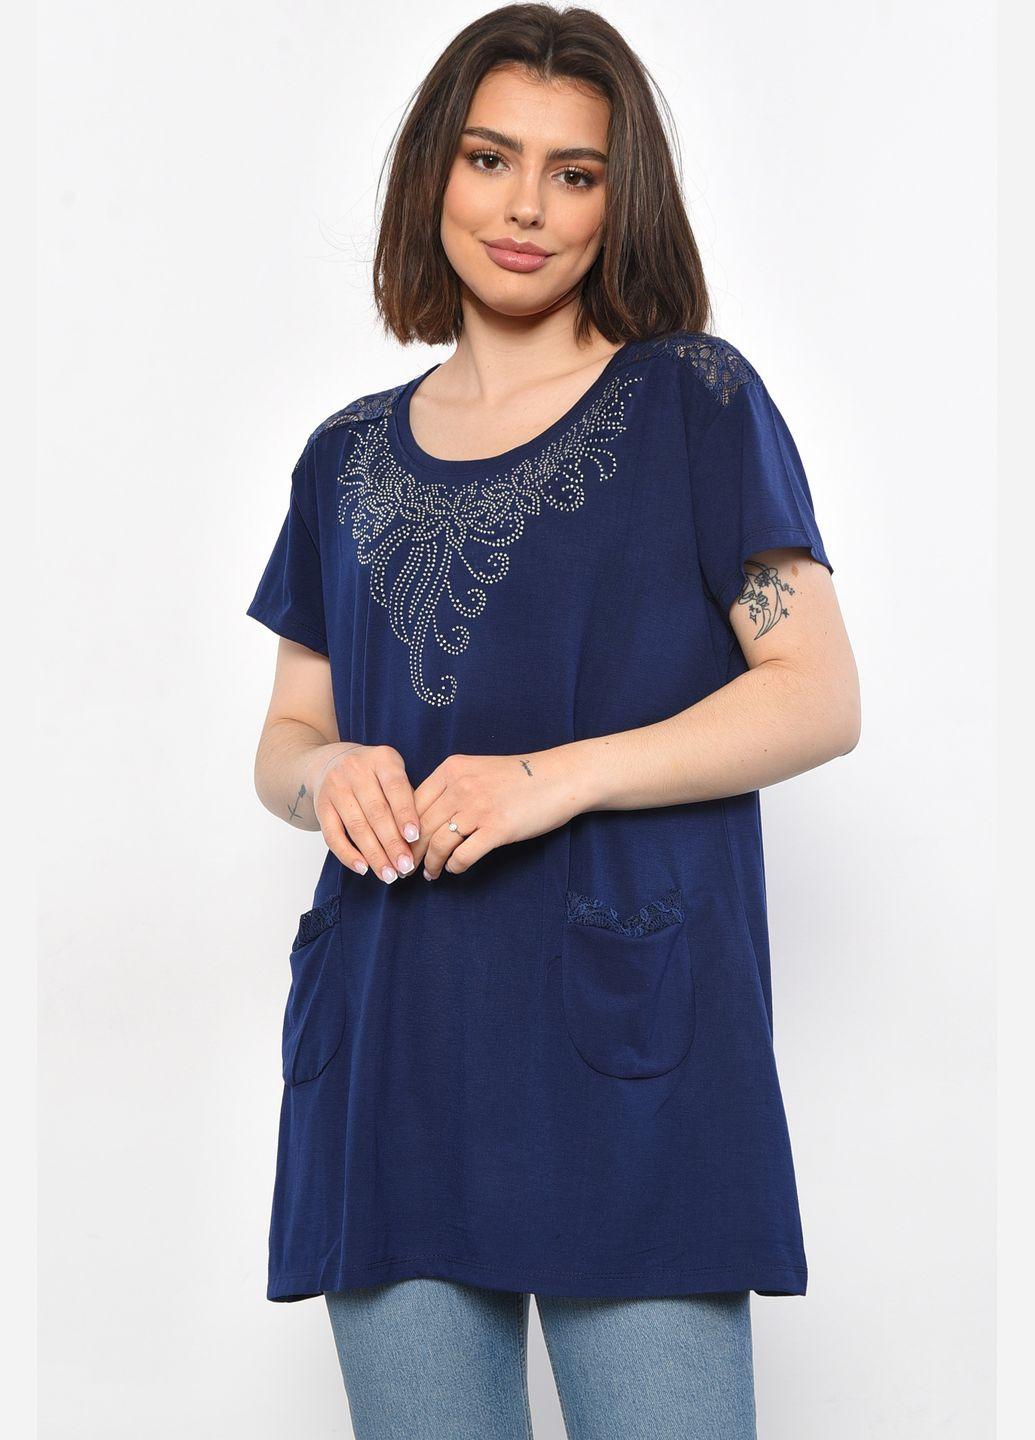 Темно-синяя летняя футболка женская батальная темно-синего цвета Let's Shop